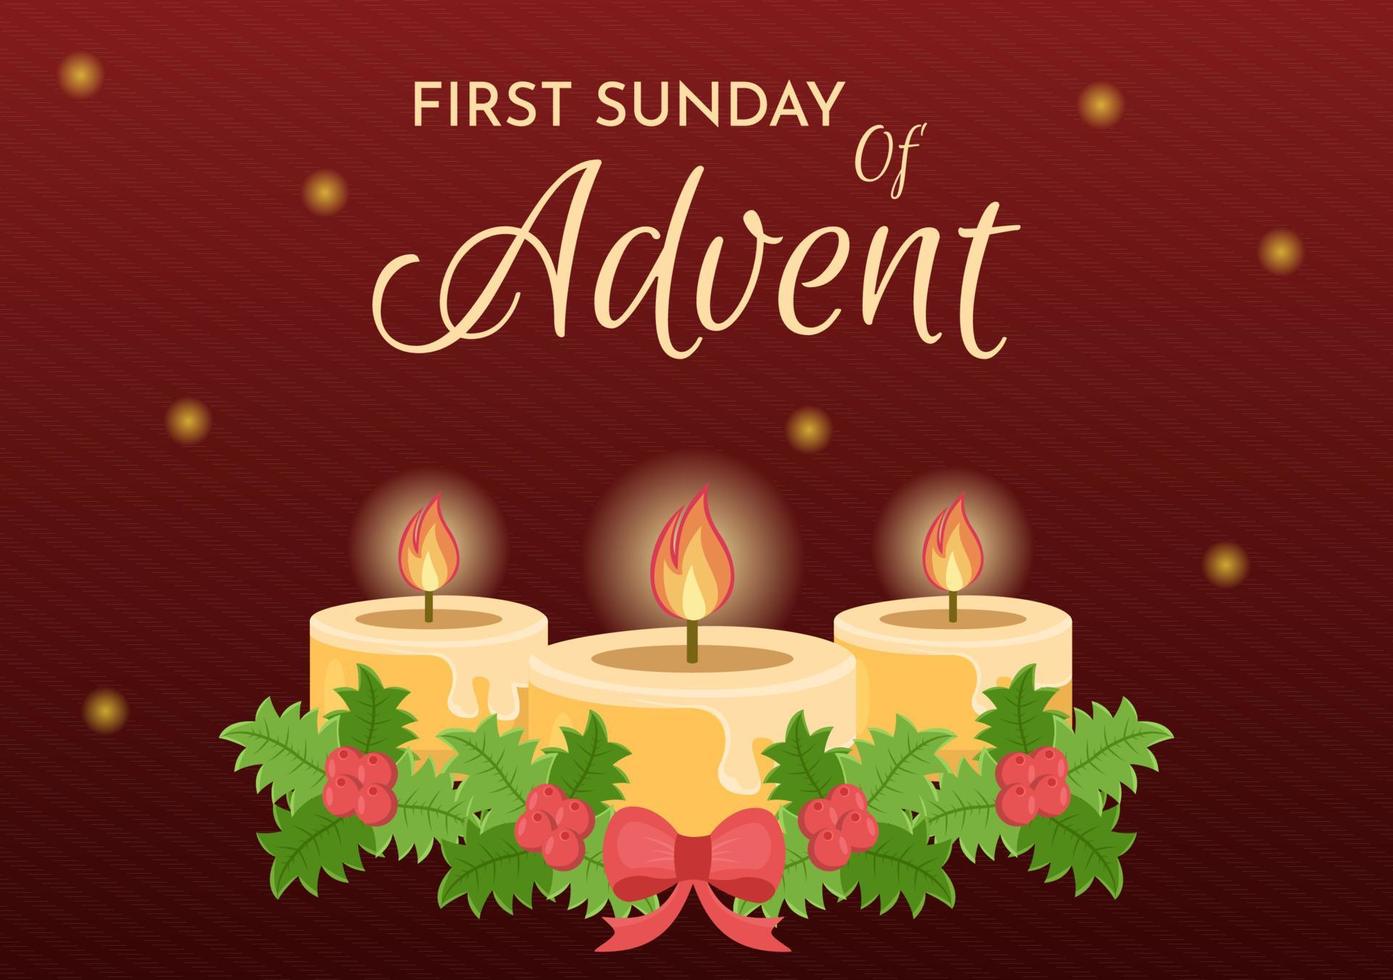 först söndag av första advent eller de början av en ny kyrka år som tar plats på november 27 i mall hand dragen tecknad serie platt illustration vektor